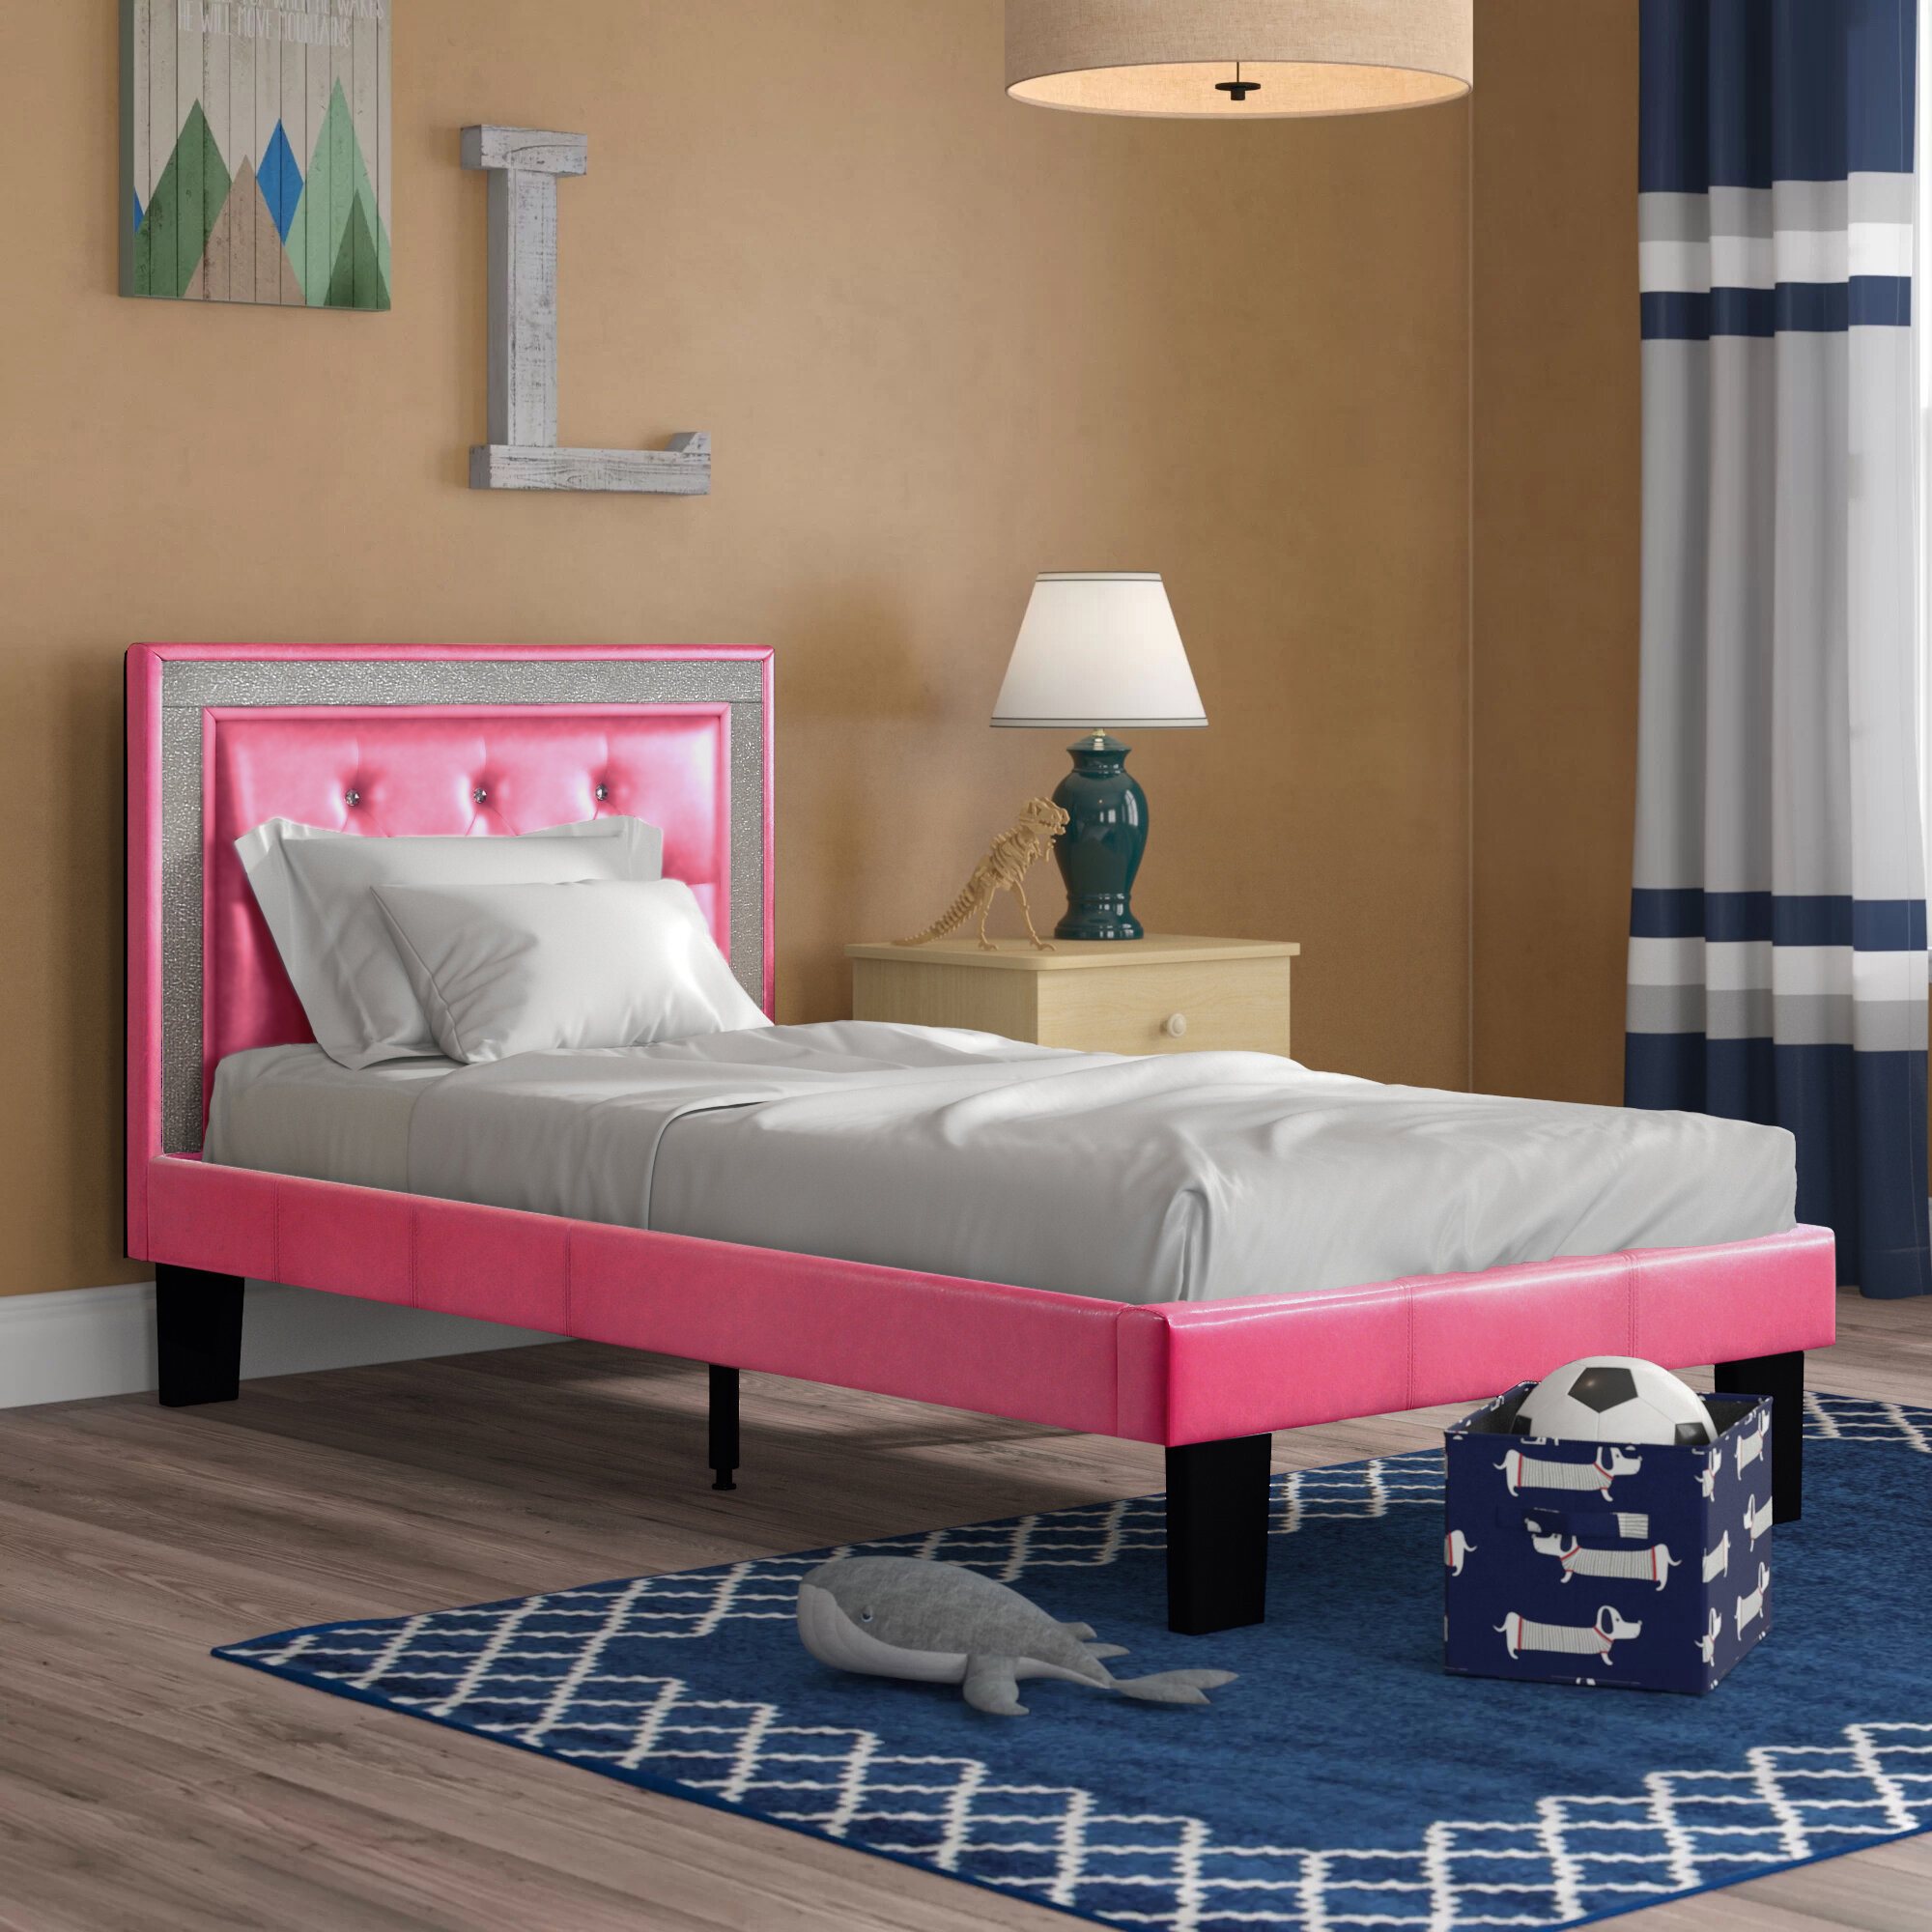 Kids Corner Beds Pink - Lvbbwkz Lknfqm : Choose from ottomans, divans ... Victoria Secret Bedroom Ideas